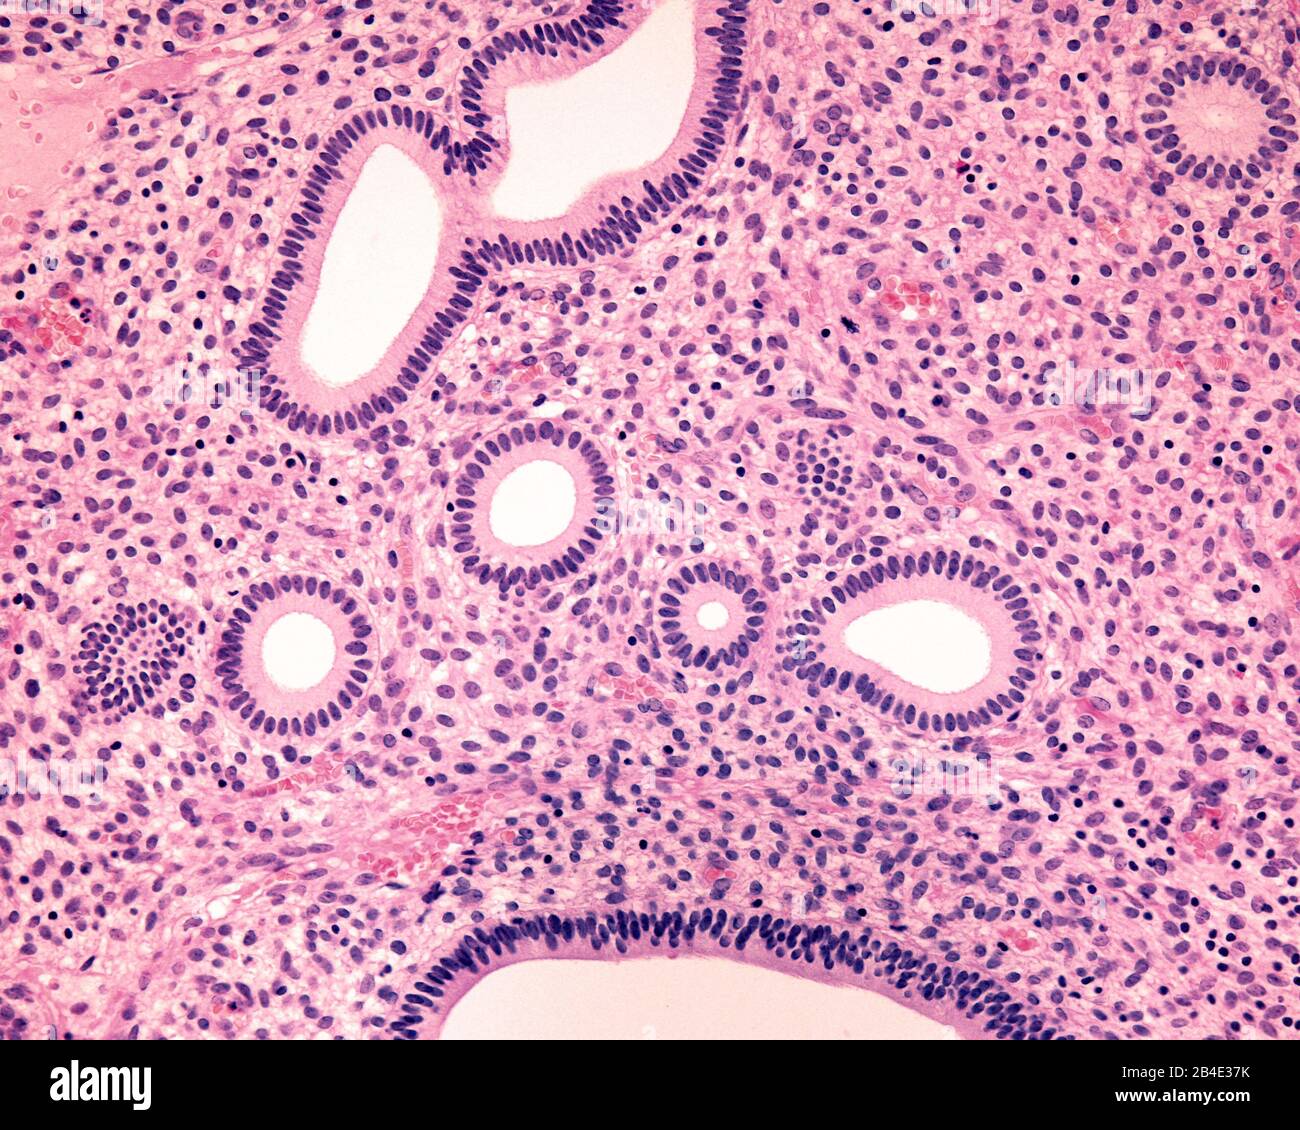 Humanes Endometrium. Proliferative Phase. Mehrere röhrenförmige Endometriendrüsen sind quergeschnitten und zeigen ihr einfaches säulenförmiges Epithel. Unter ihnen, t Stockfoto